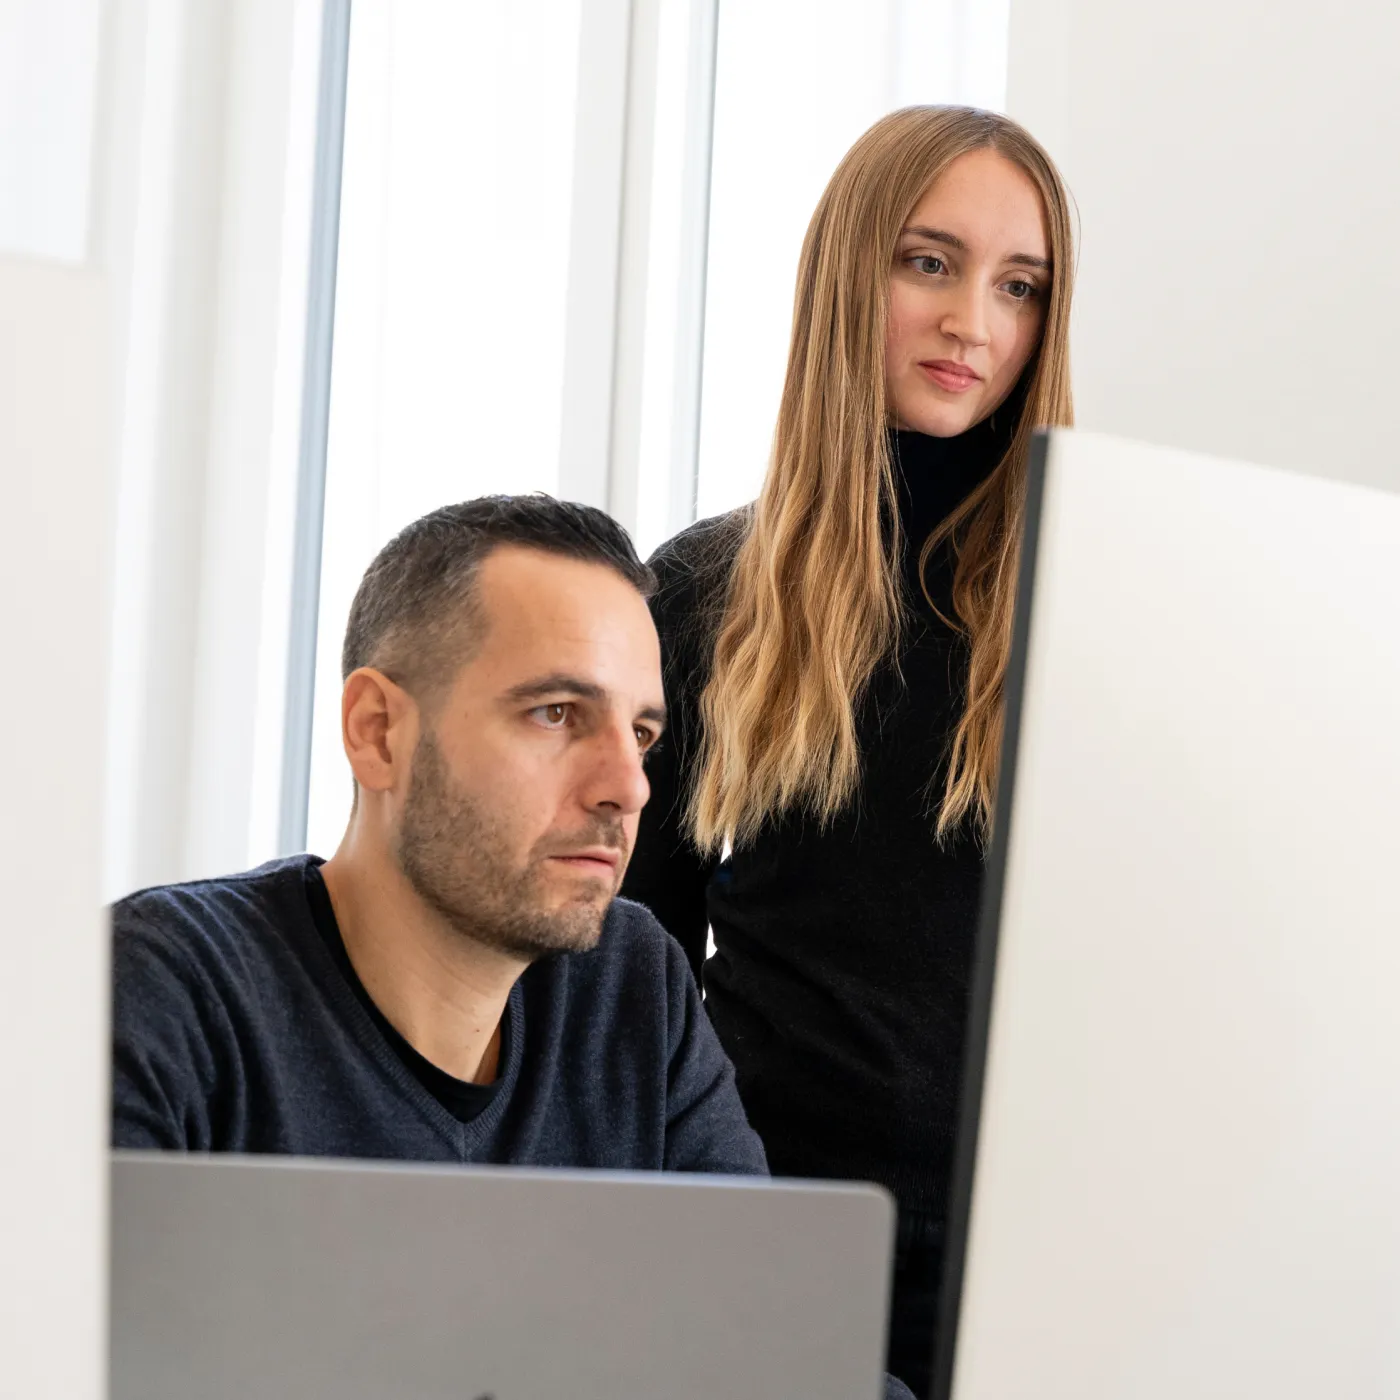 Immagine di un ragazzo e una ragazza che guardano concentrati verso un monitor